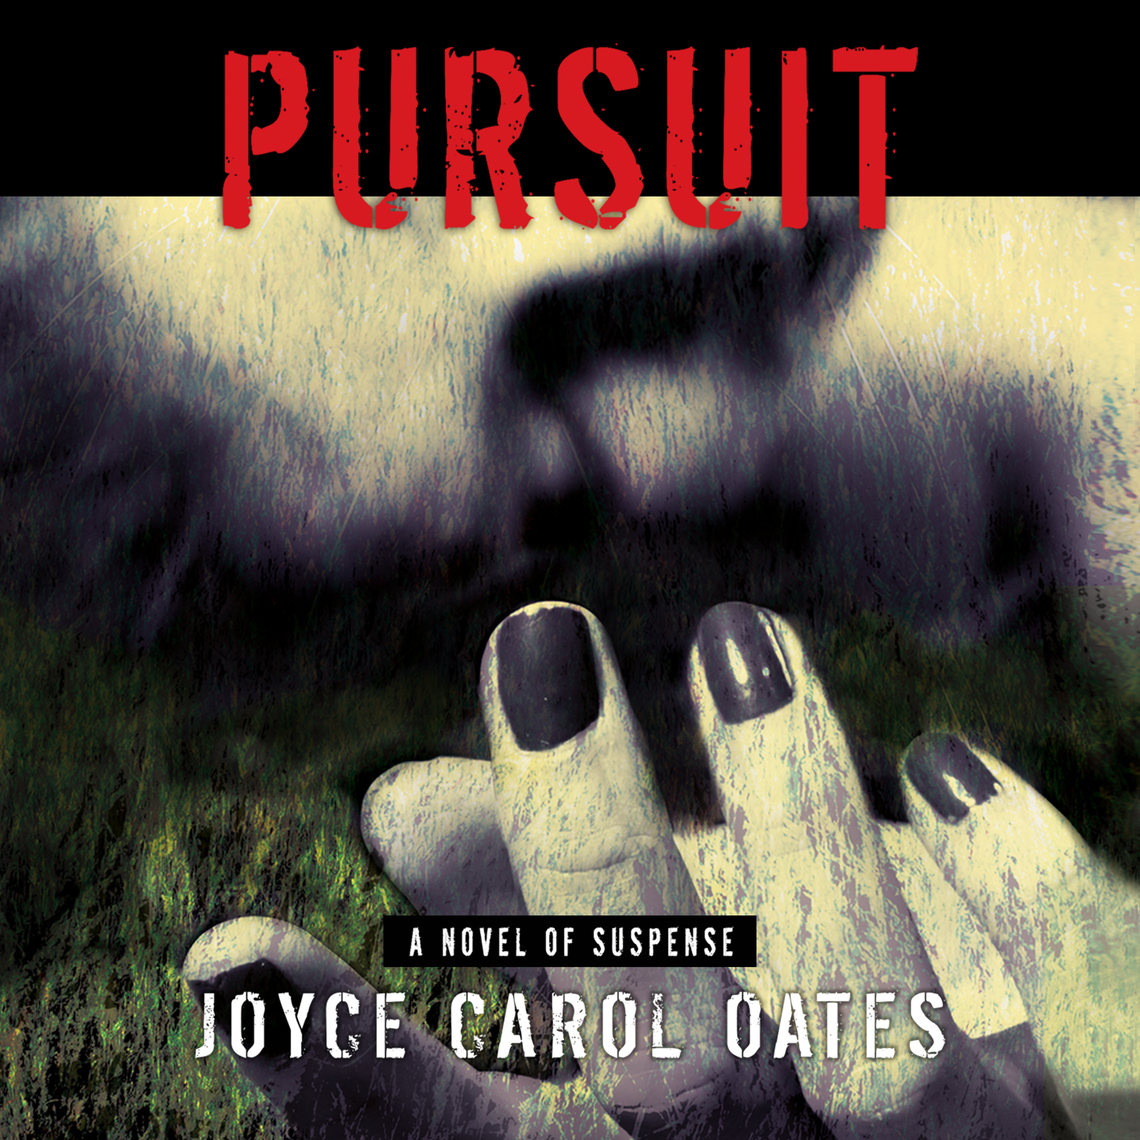 My Life as a Rat (ebook), Joyce Carol Oates